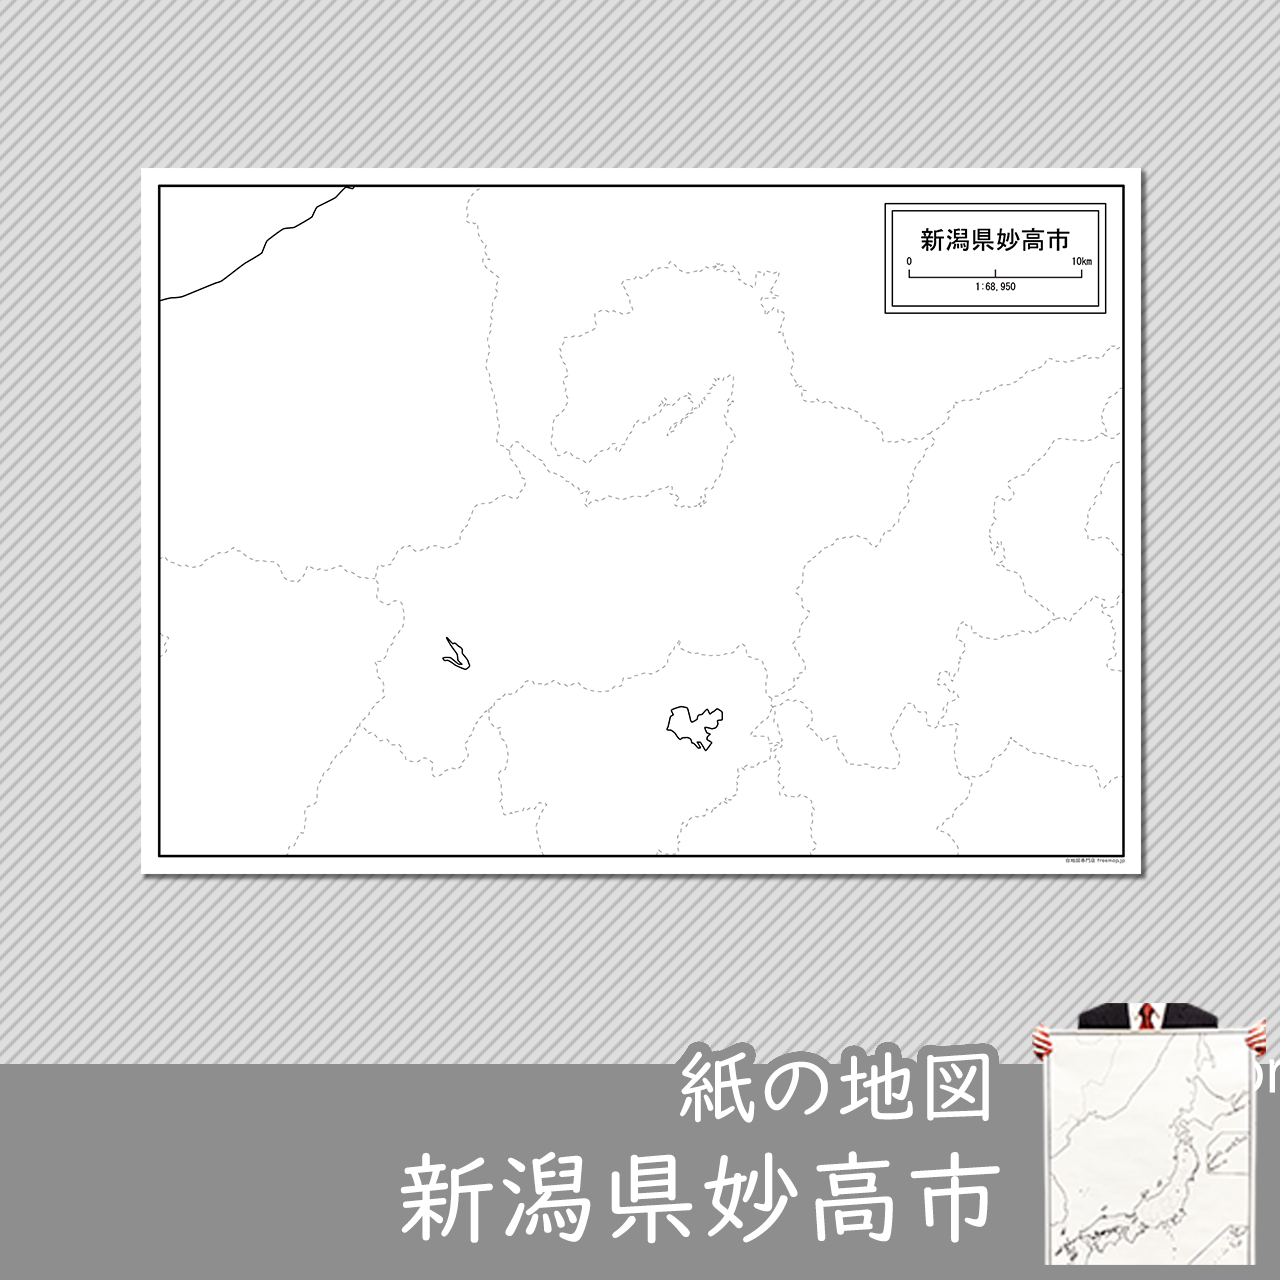 妙高市の紙の白地図のサムネイル